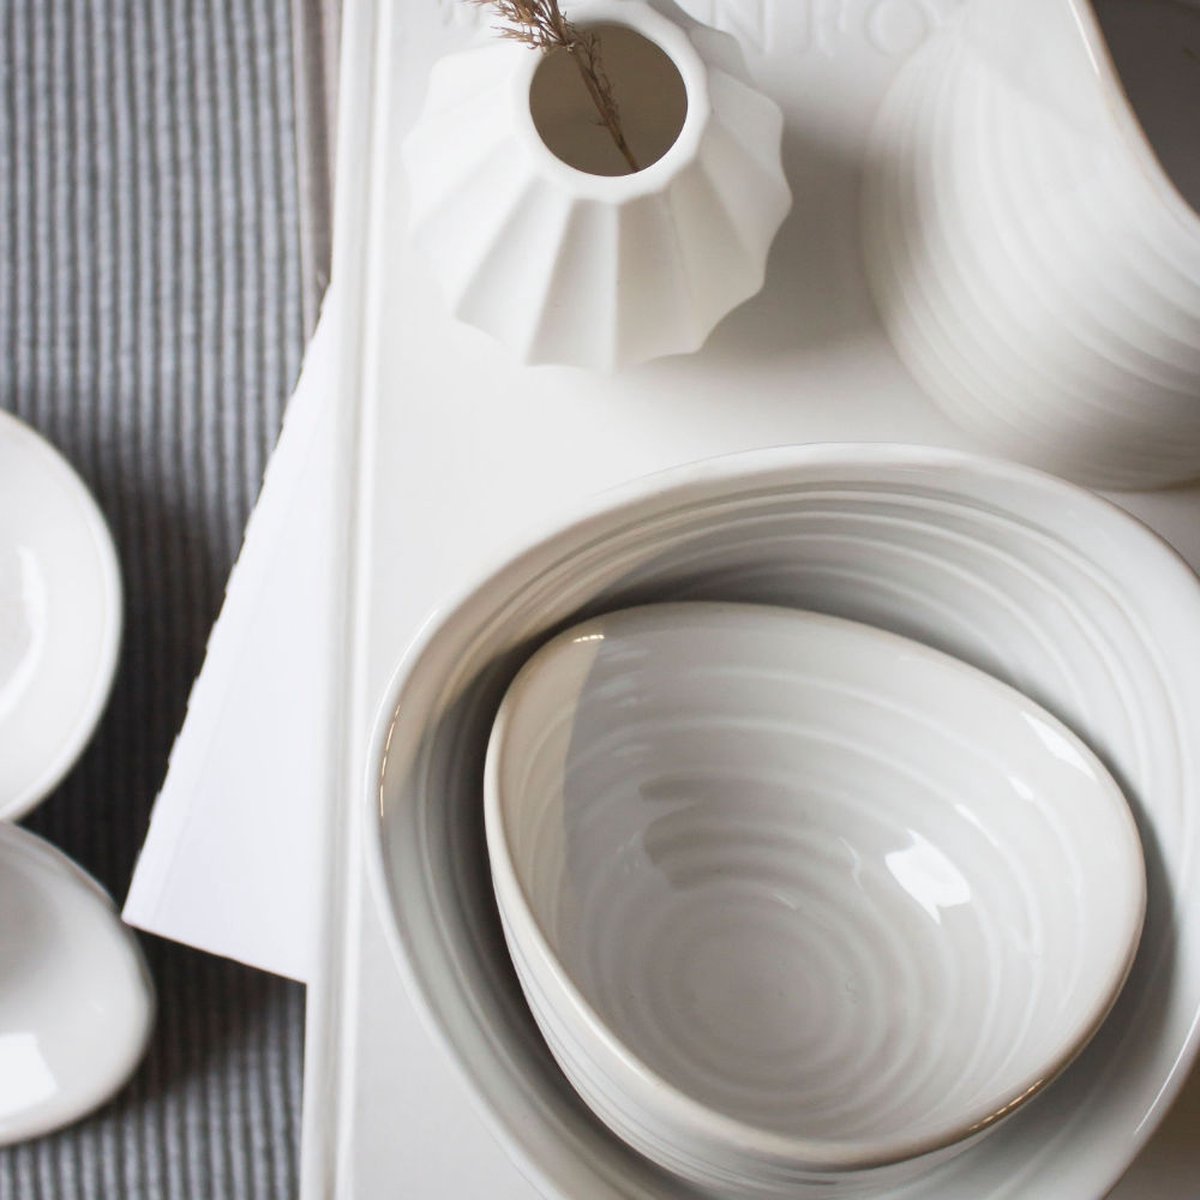 Storefactory Kullen kommetje - steengoed - 12 x 12 x 6 cm - gebroken wit / off-white